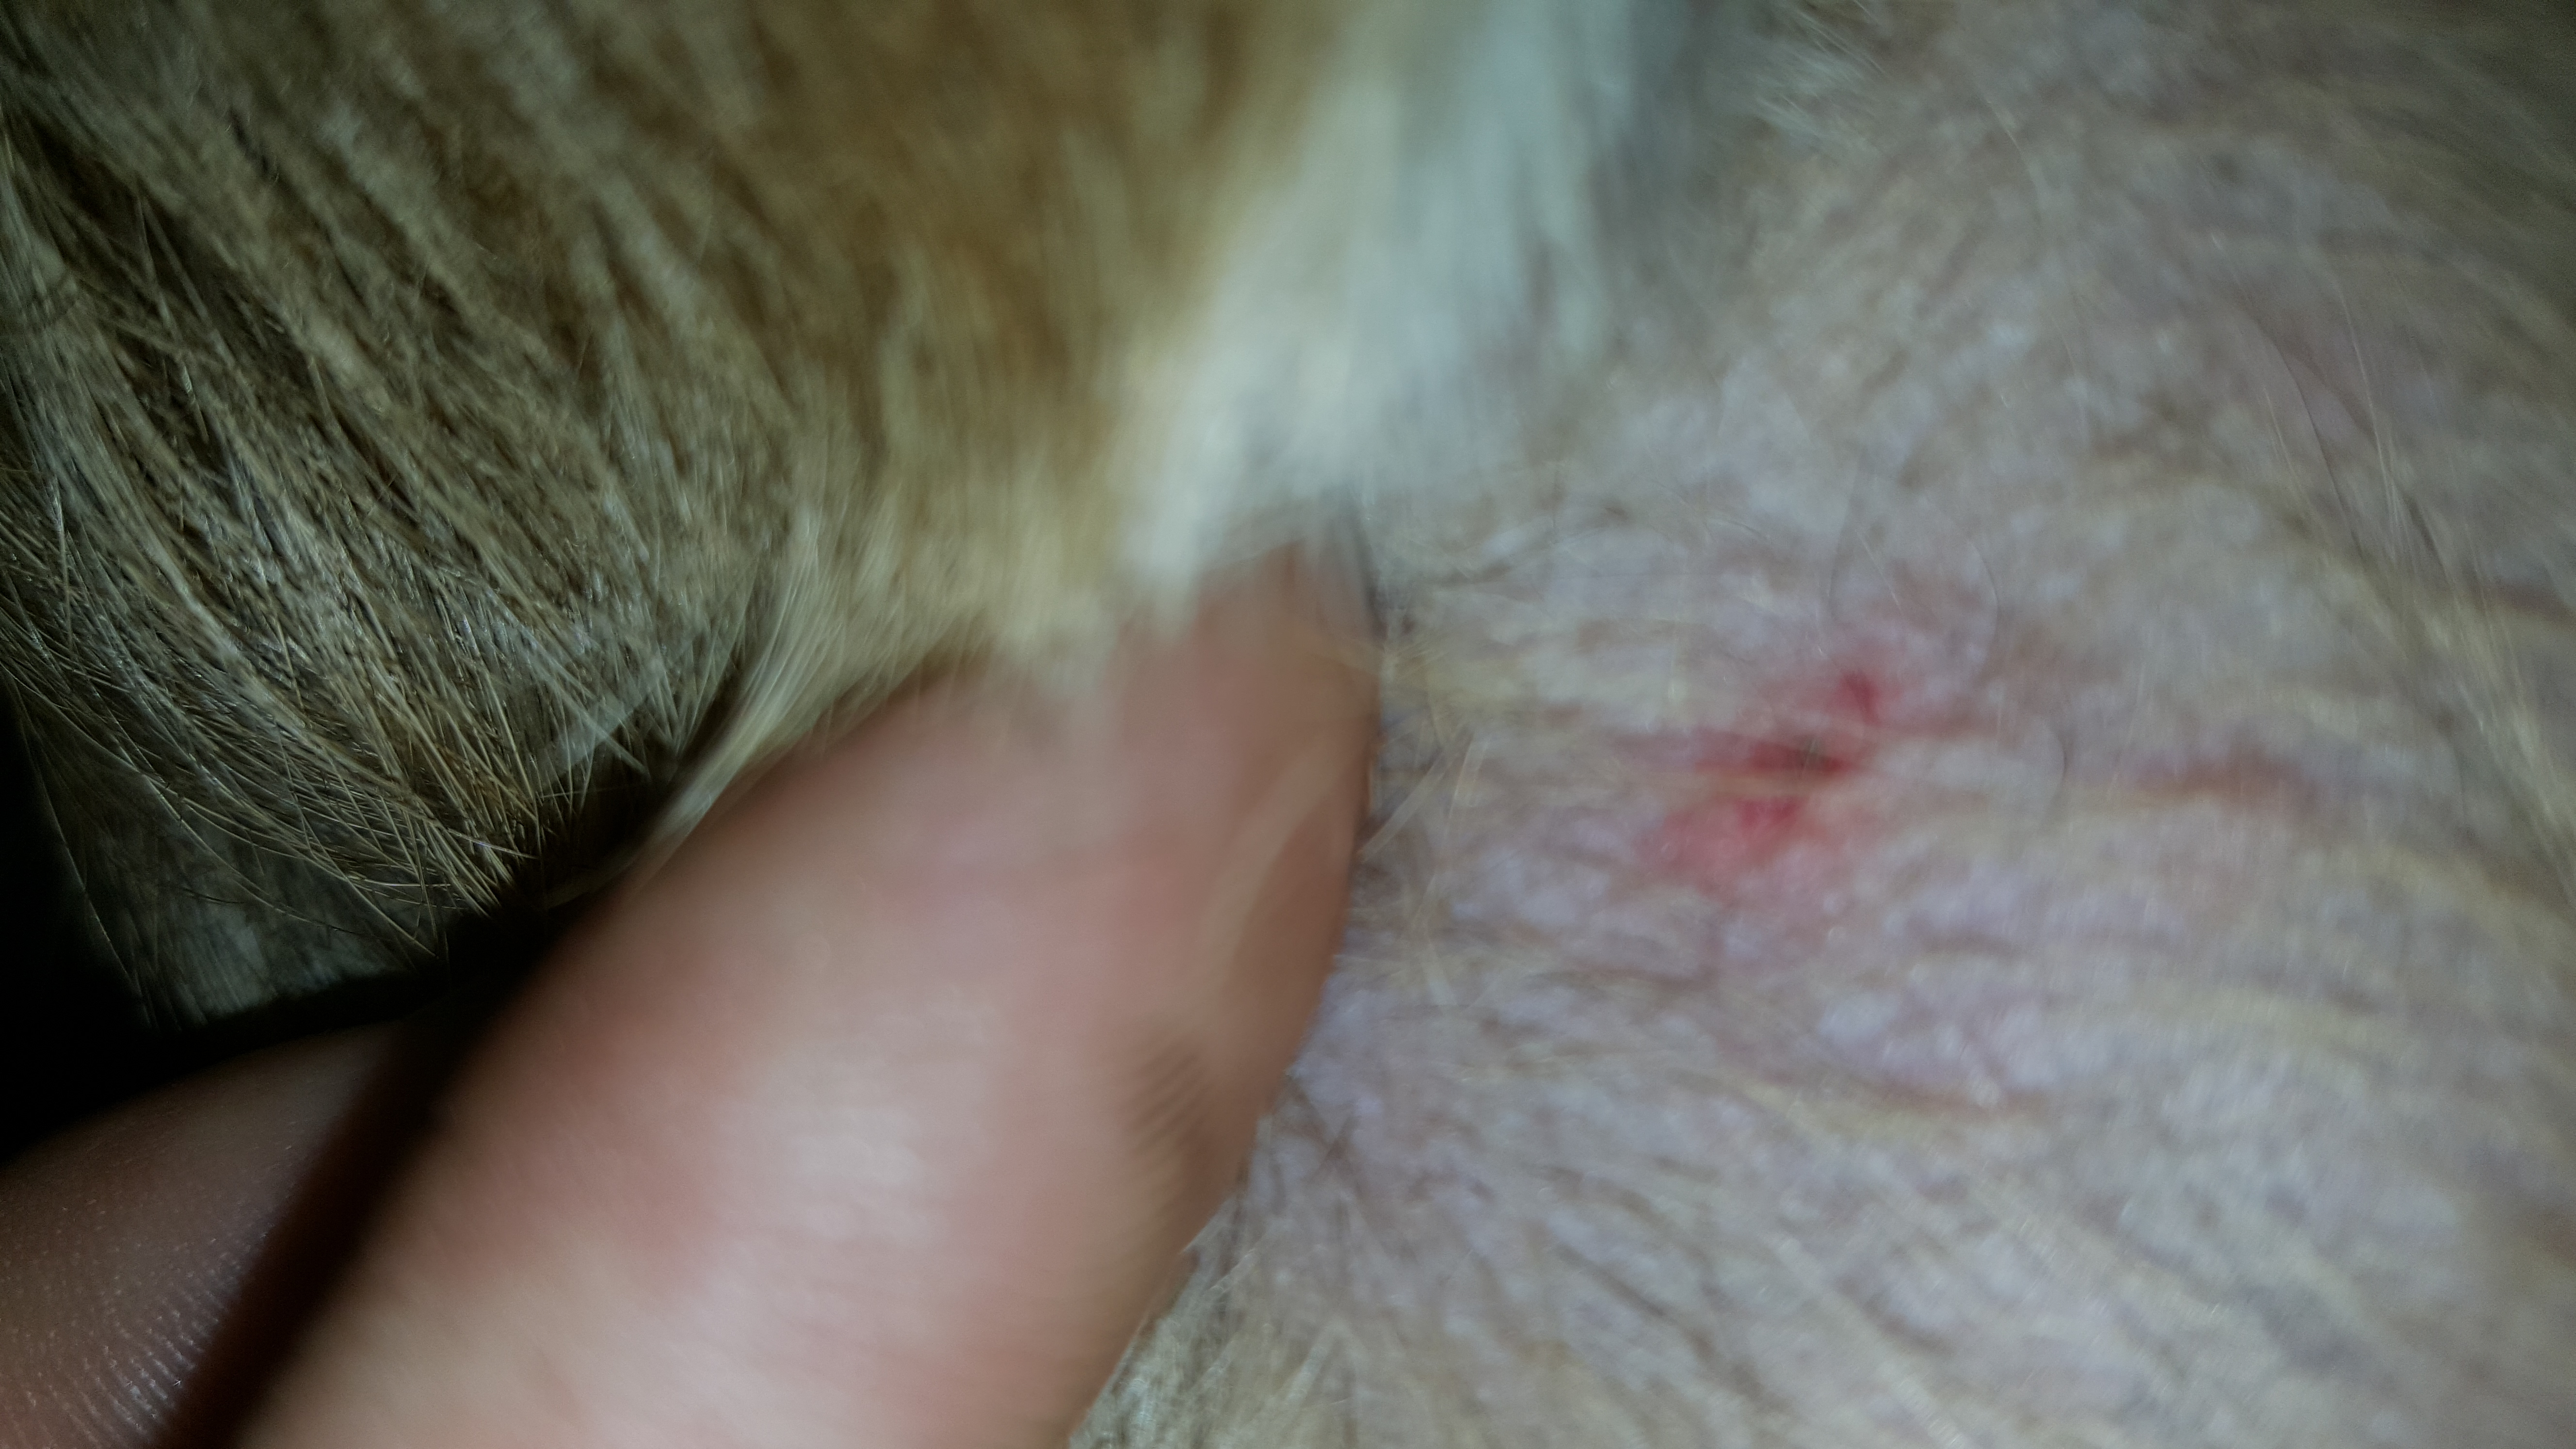 Mein Hund wurde von einer Zecke gebissen aber ich glaube der Kopf